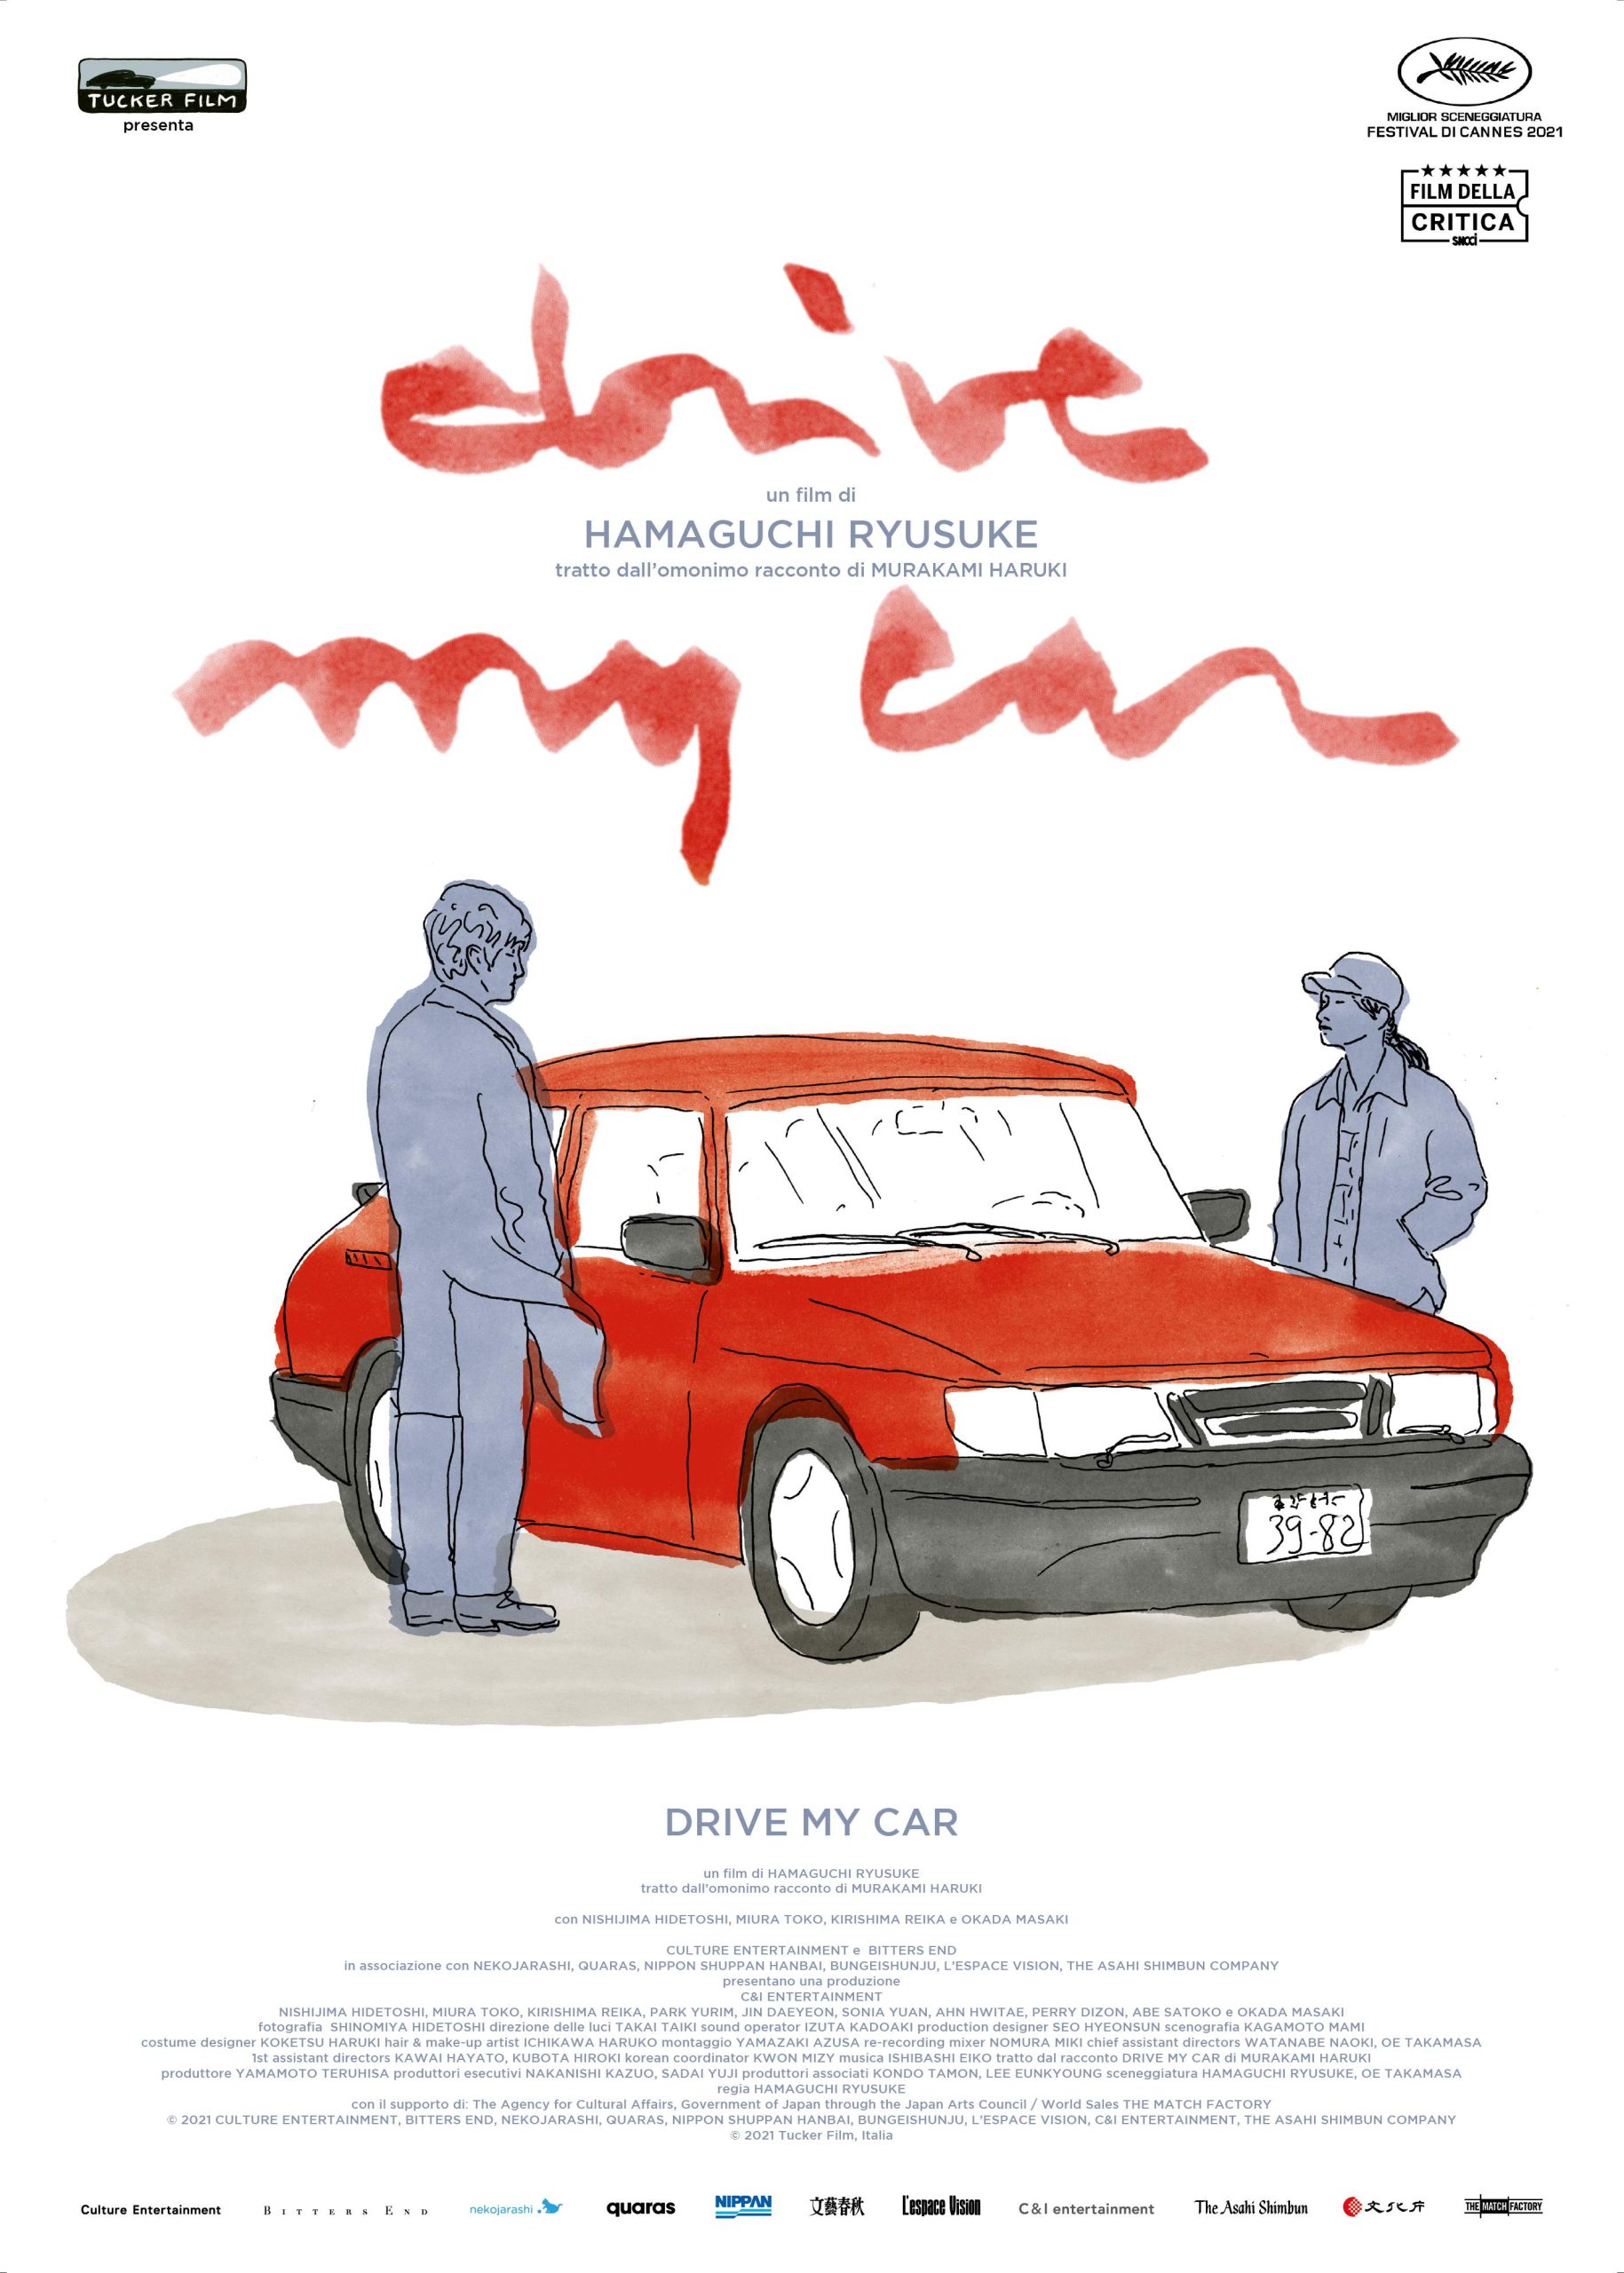 Scopri di più sull'articolo “Drive My Car” candidato a 4 premi Oscar, tra cui miglior film e miglior regia